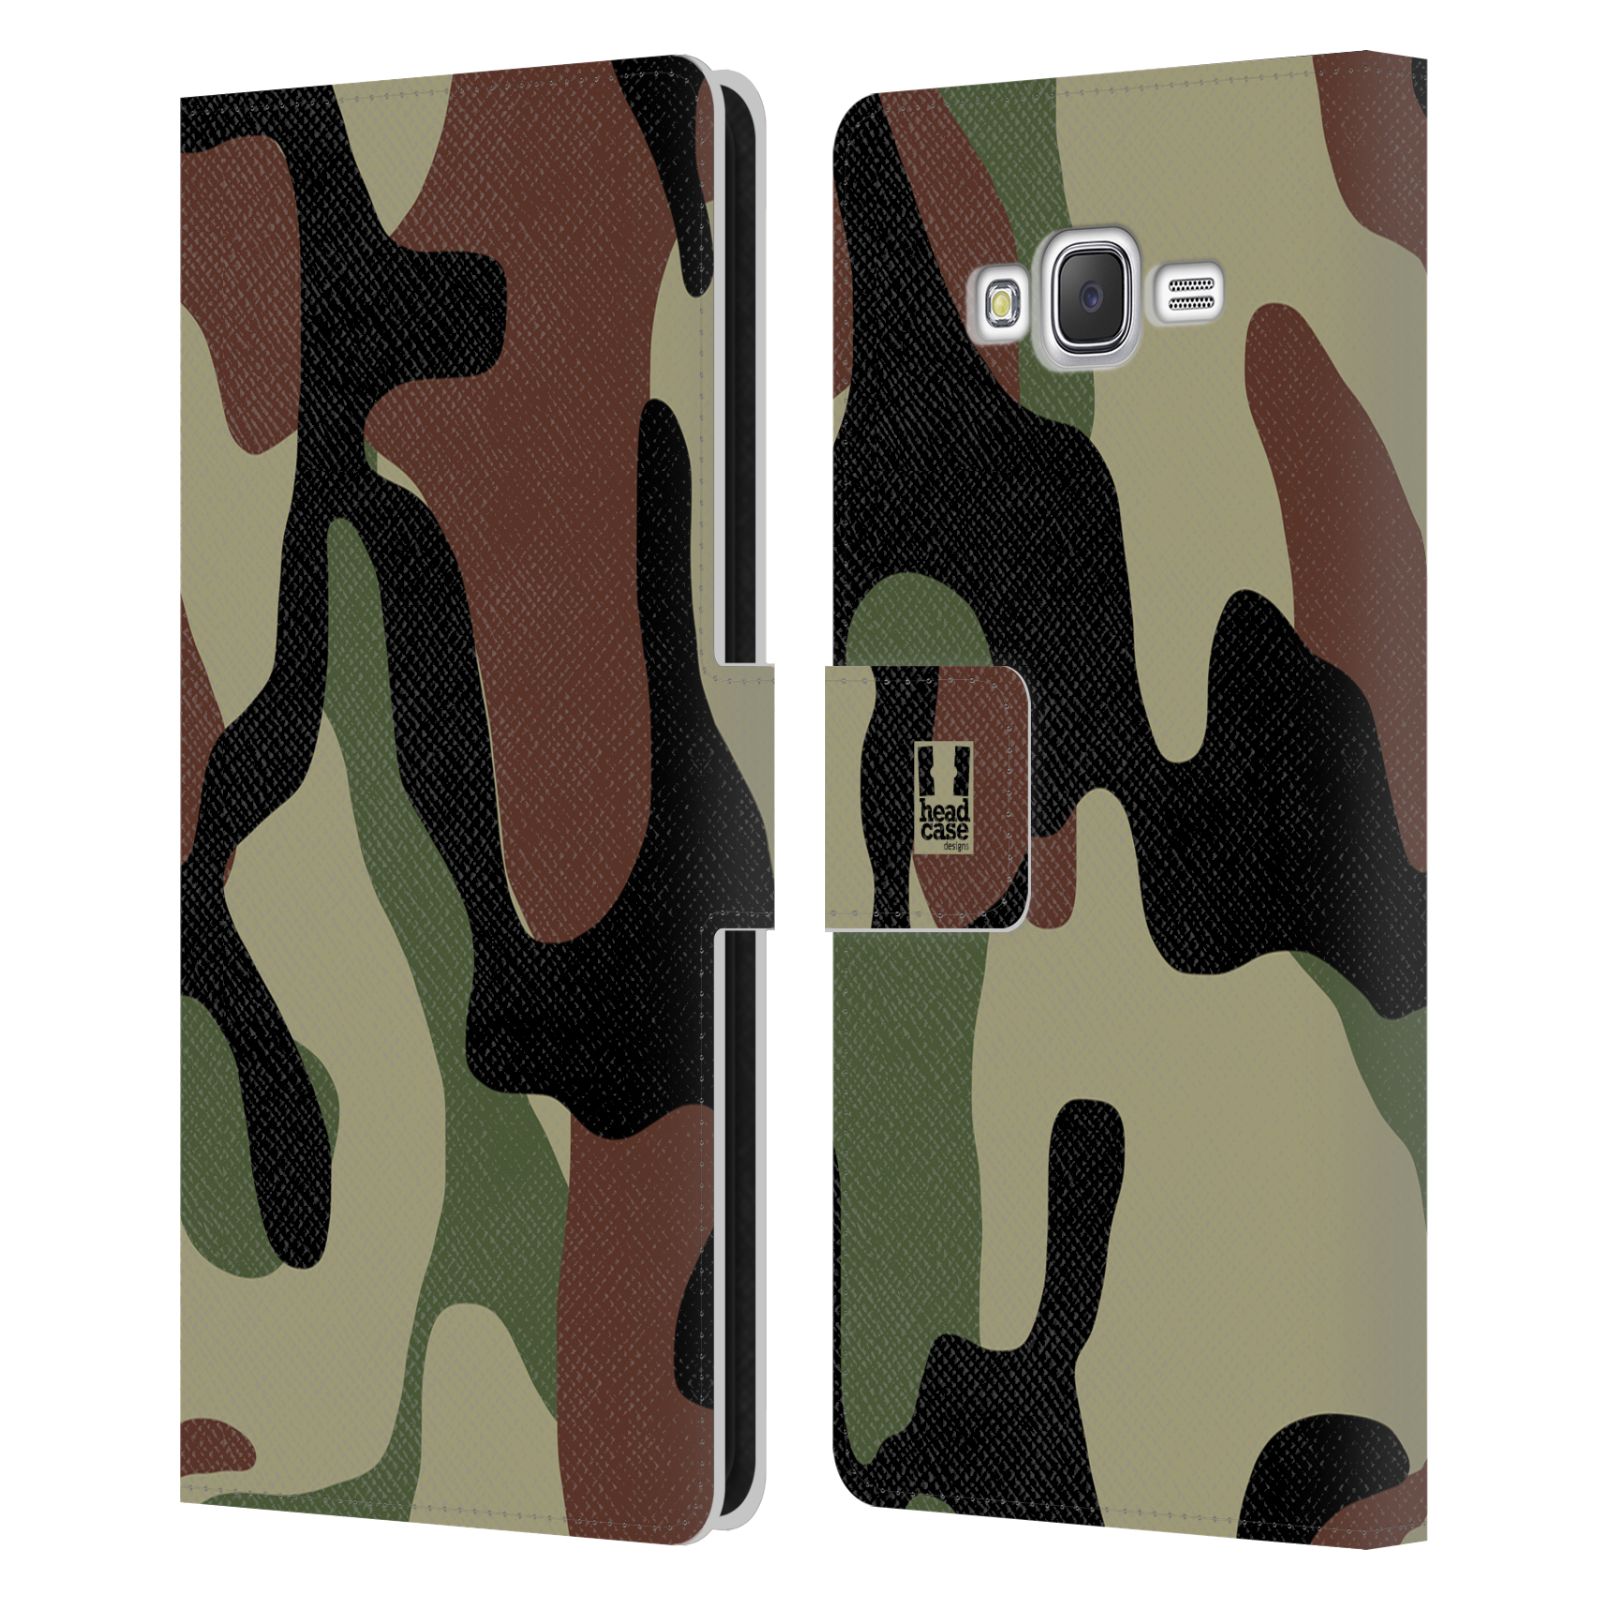 HEAD CASE Flipové pouzdro pro mobil Samsung Galaxy J7, J700 kamufláž les hnědá, černá a zelená